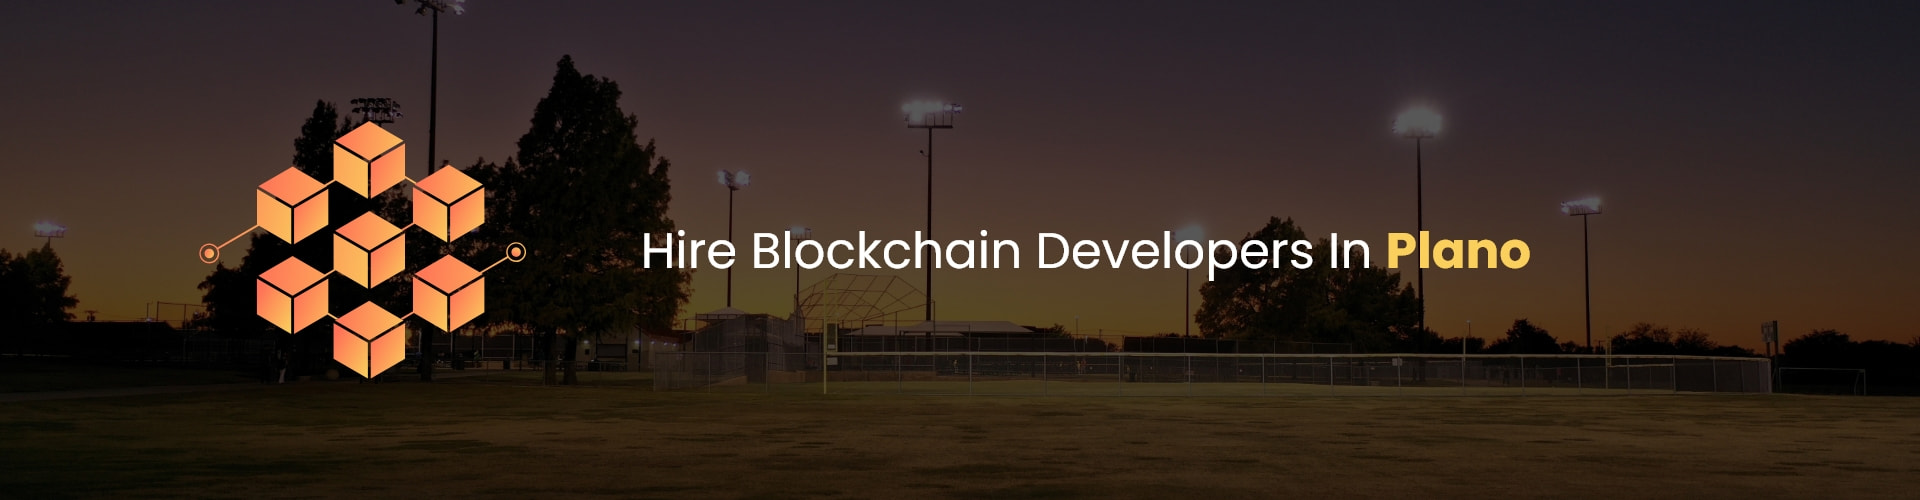 hire blockchain developers in plano